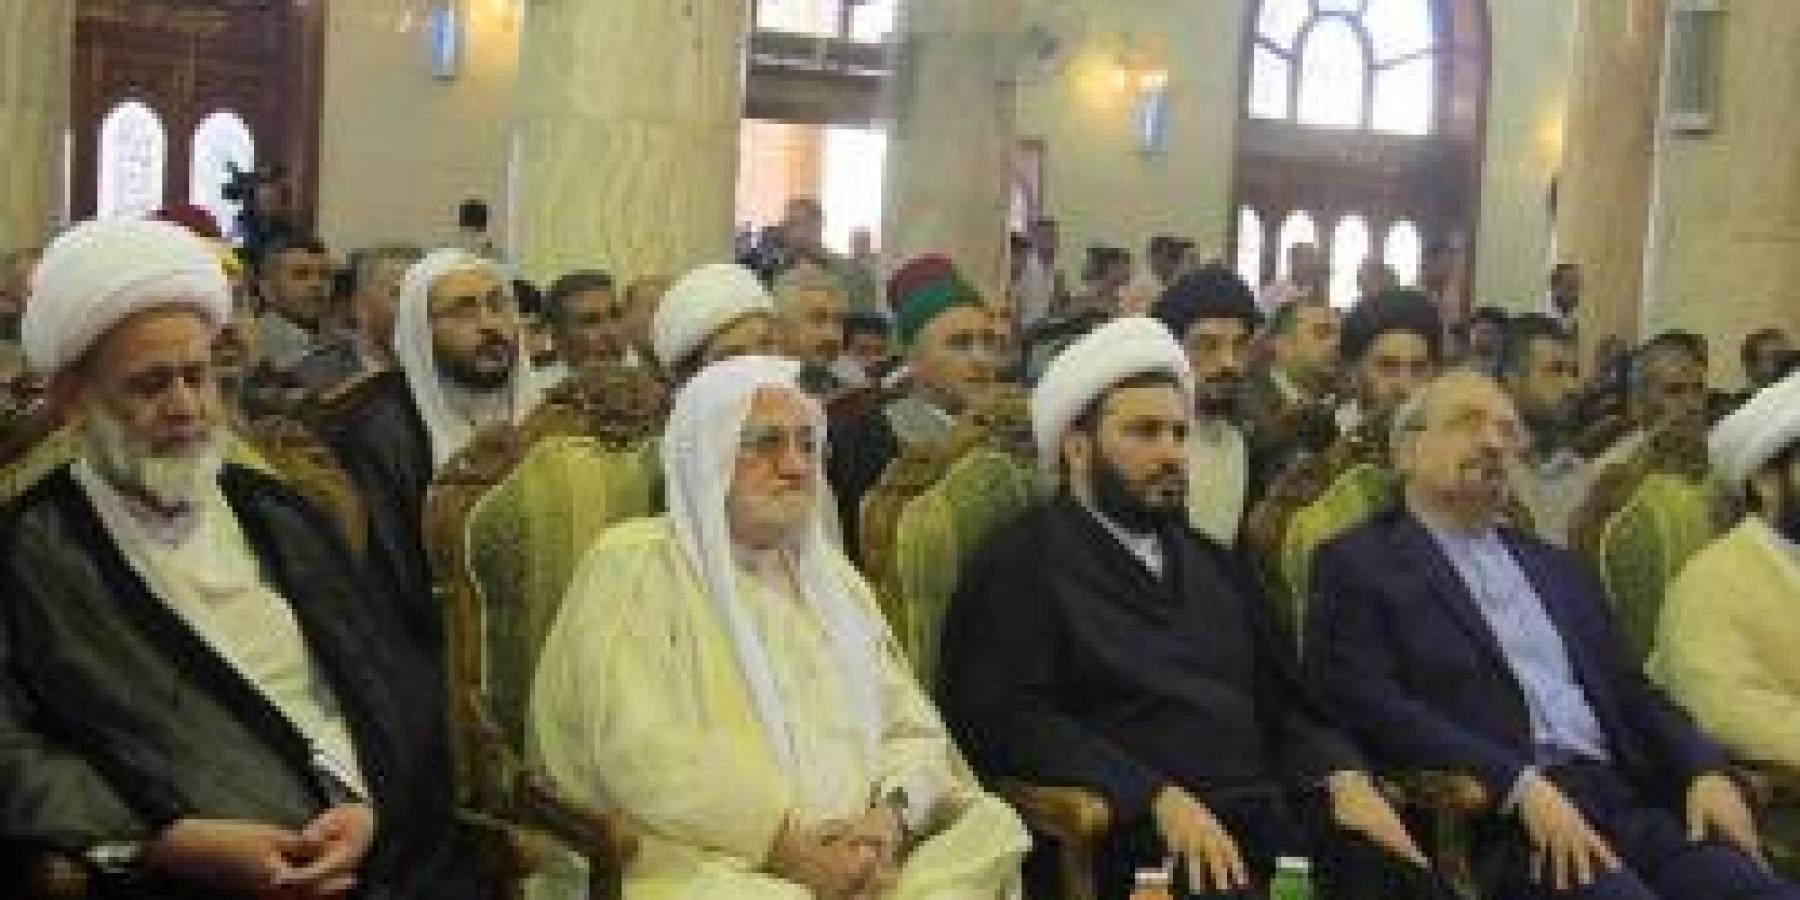 مشاركة واسعة للعتبة العلوية المقدسة في فعاليات مهرجان سفير الحسين الثقافي الثالث